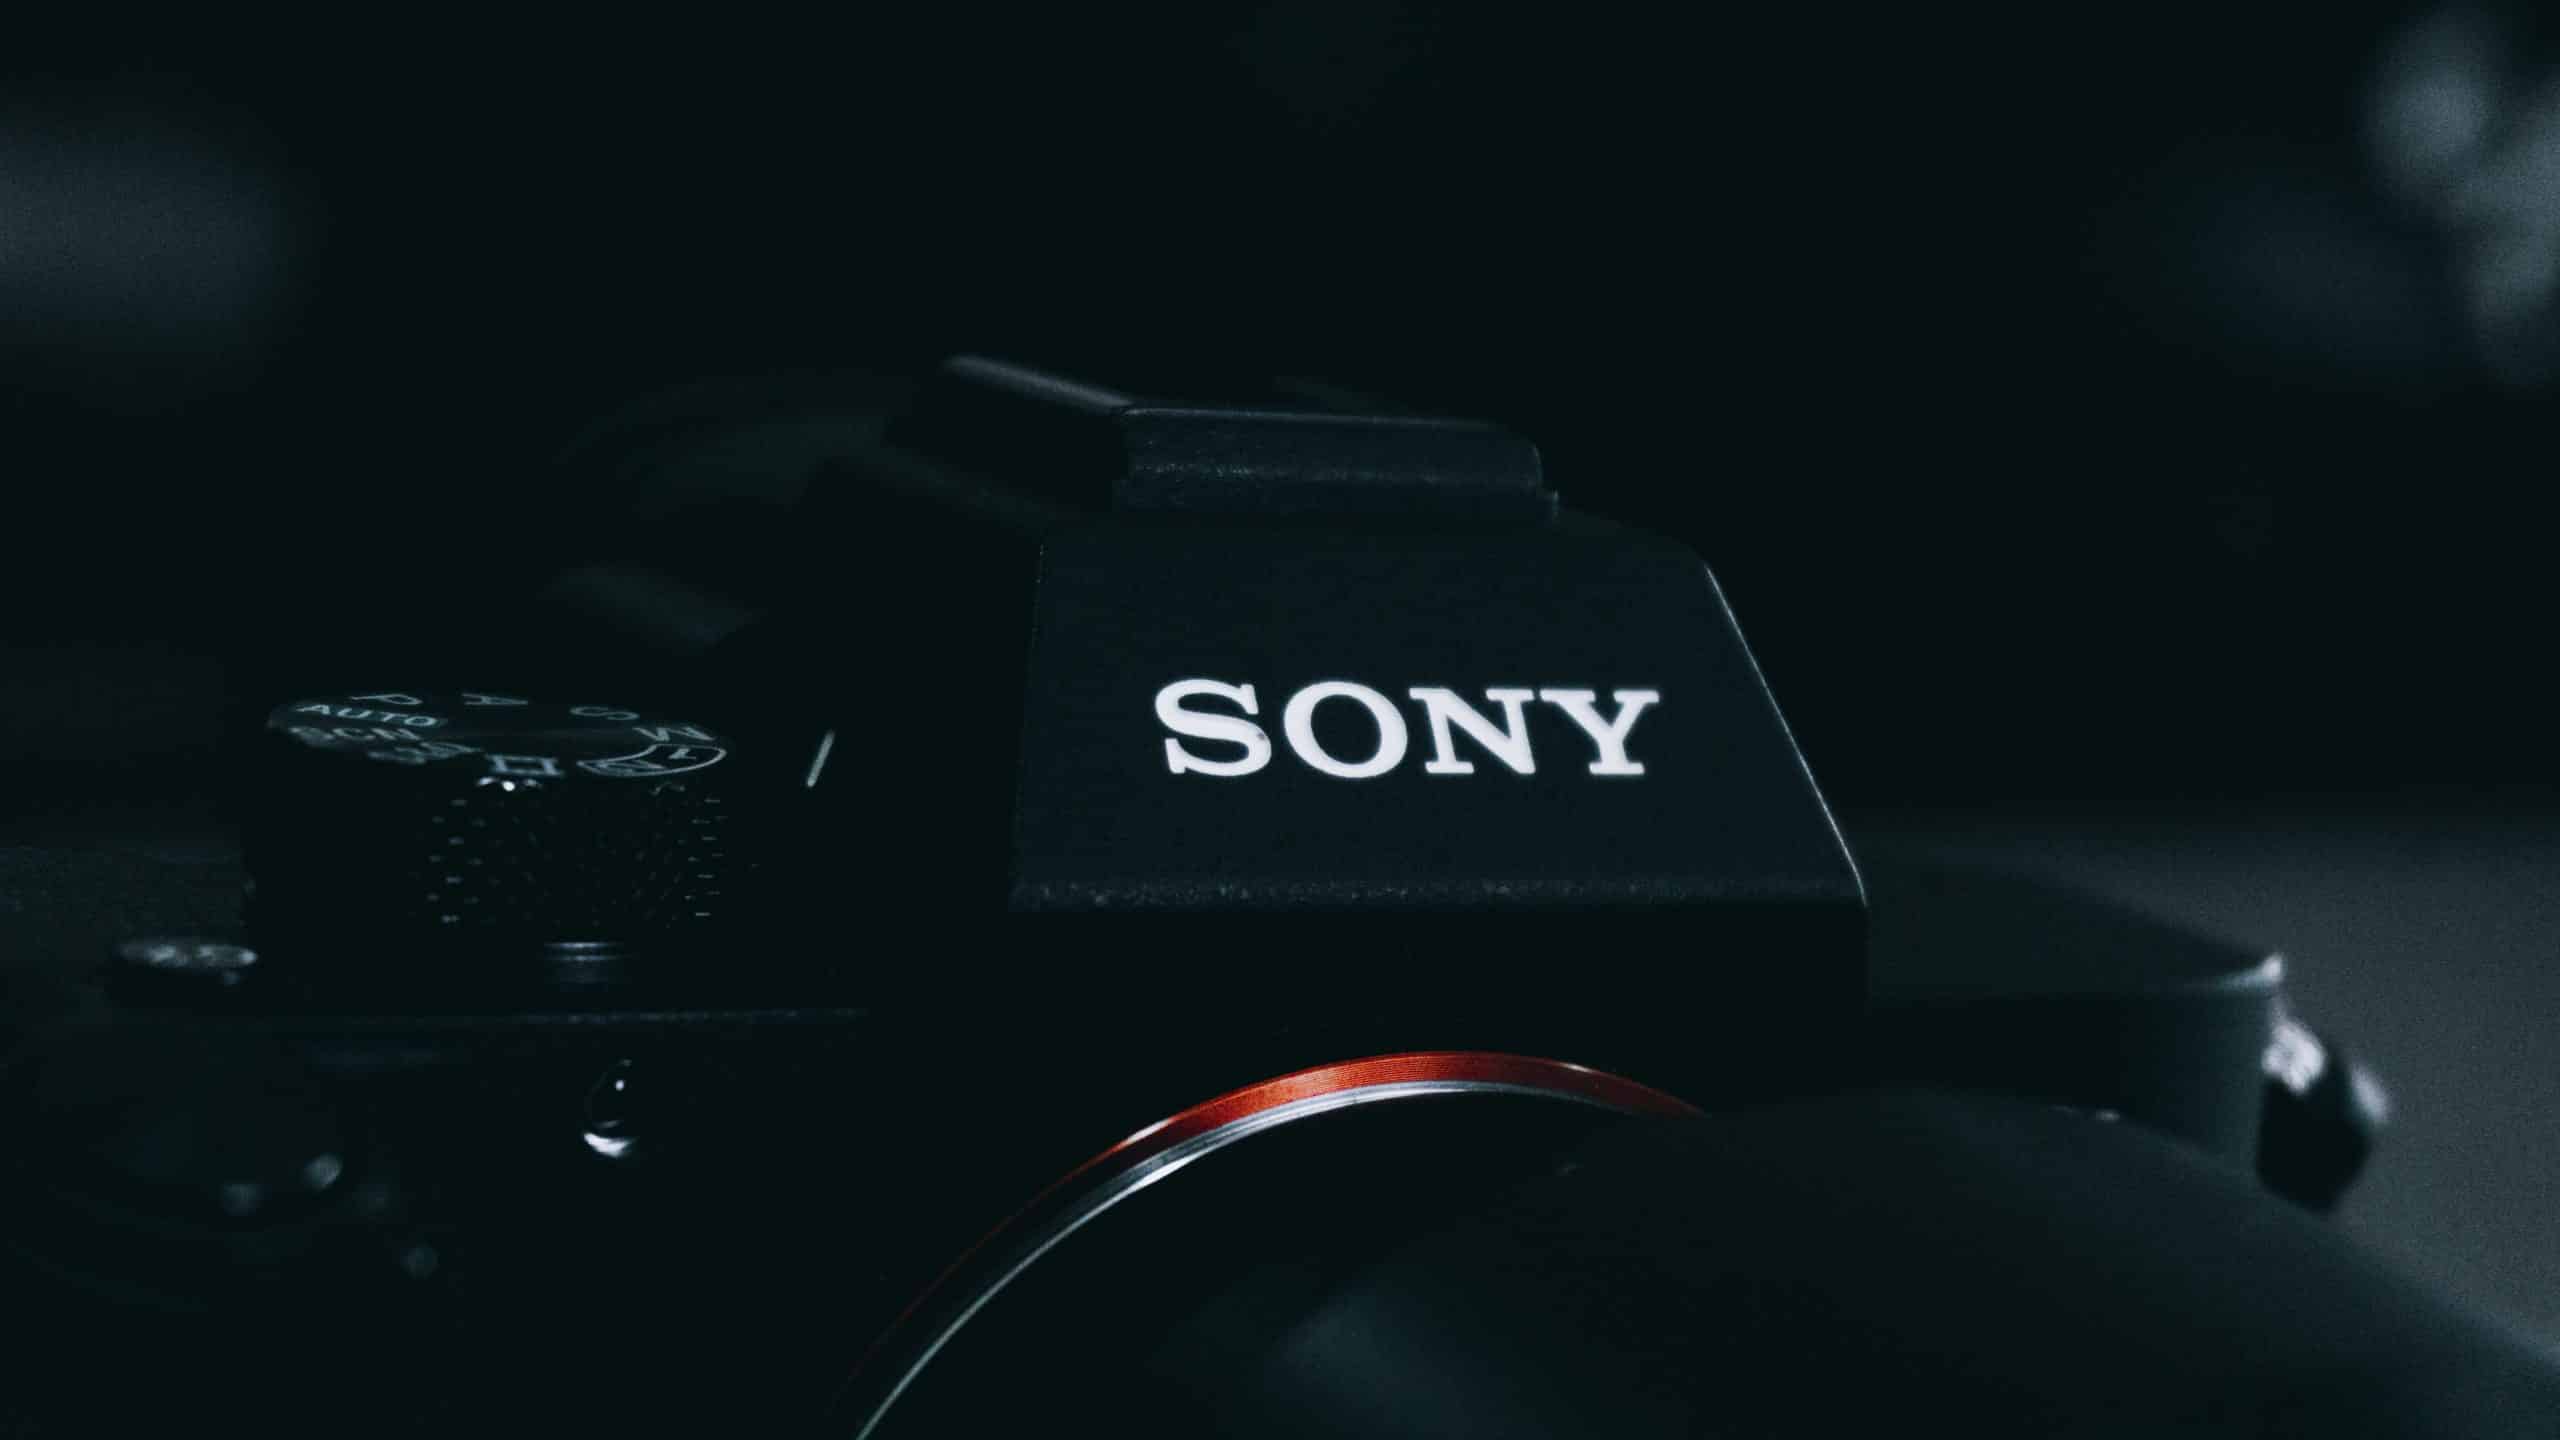 Le logo de Sony sur un appareil photo.